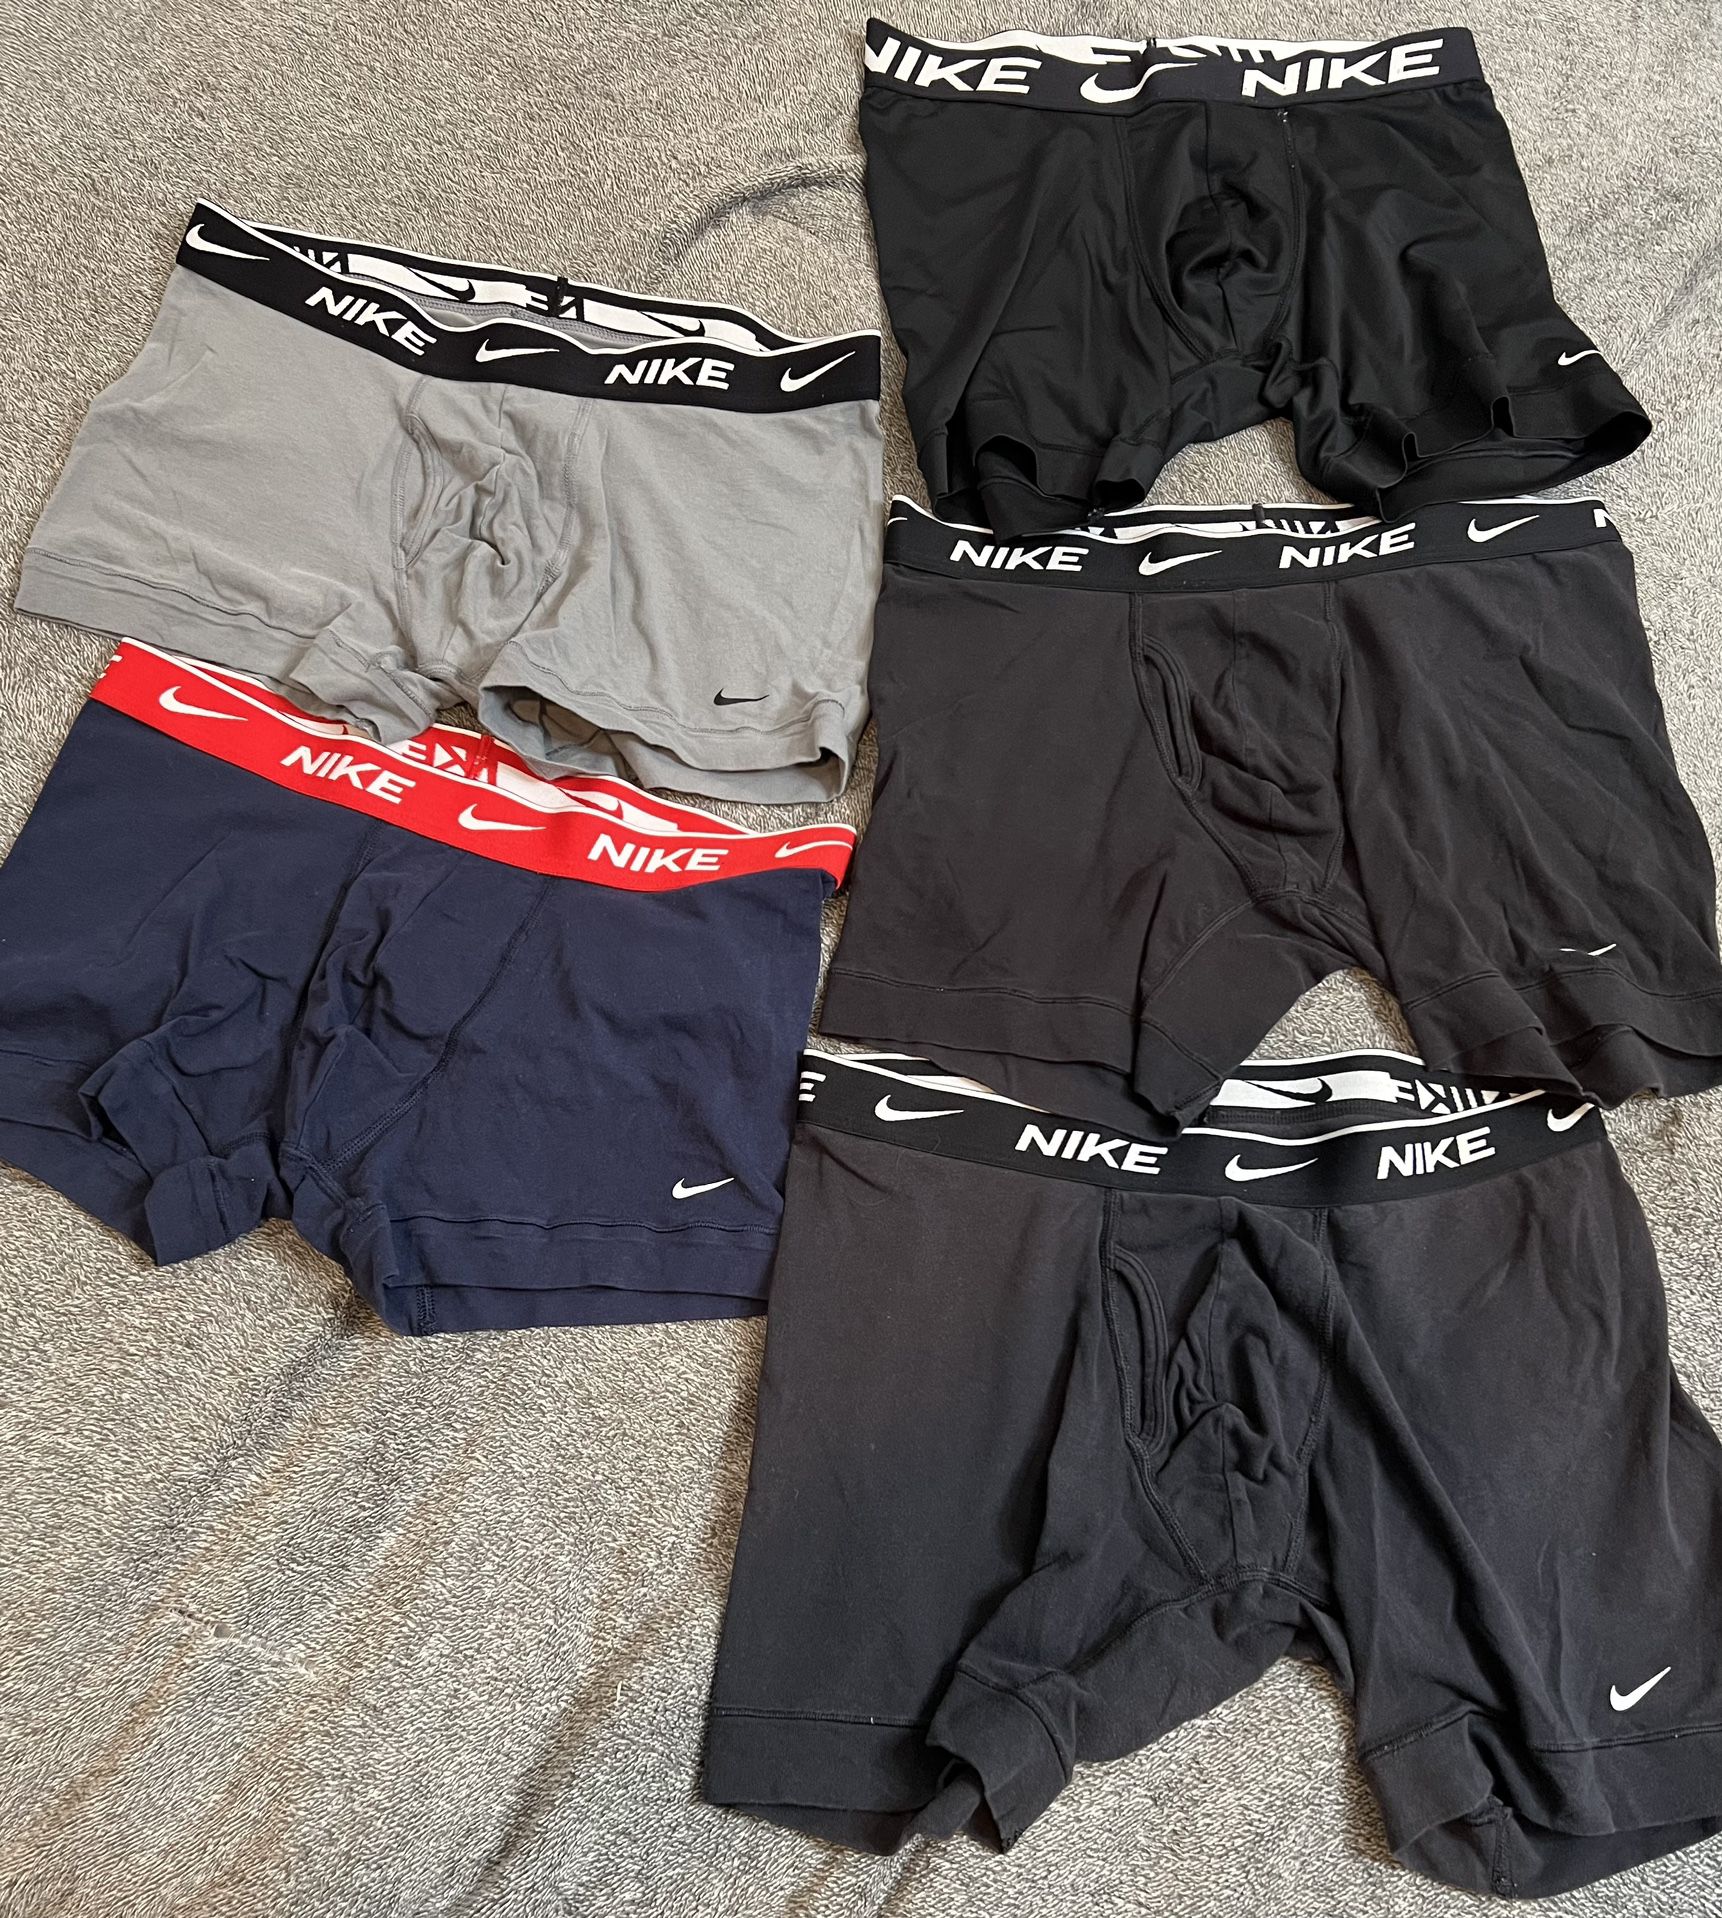 Nike Pro underwear